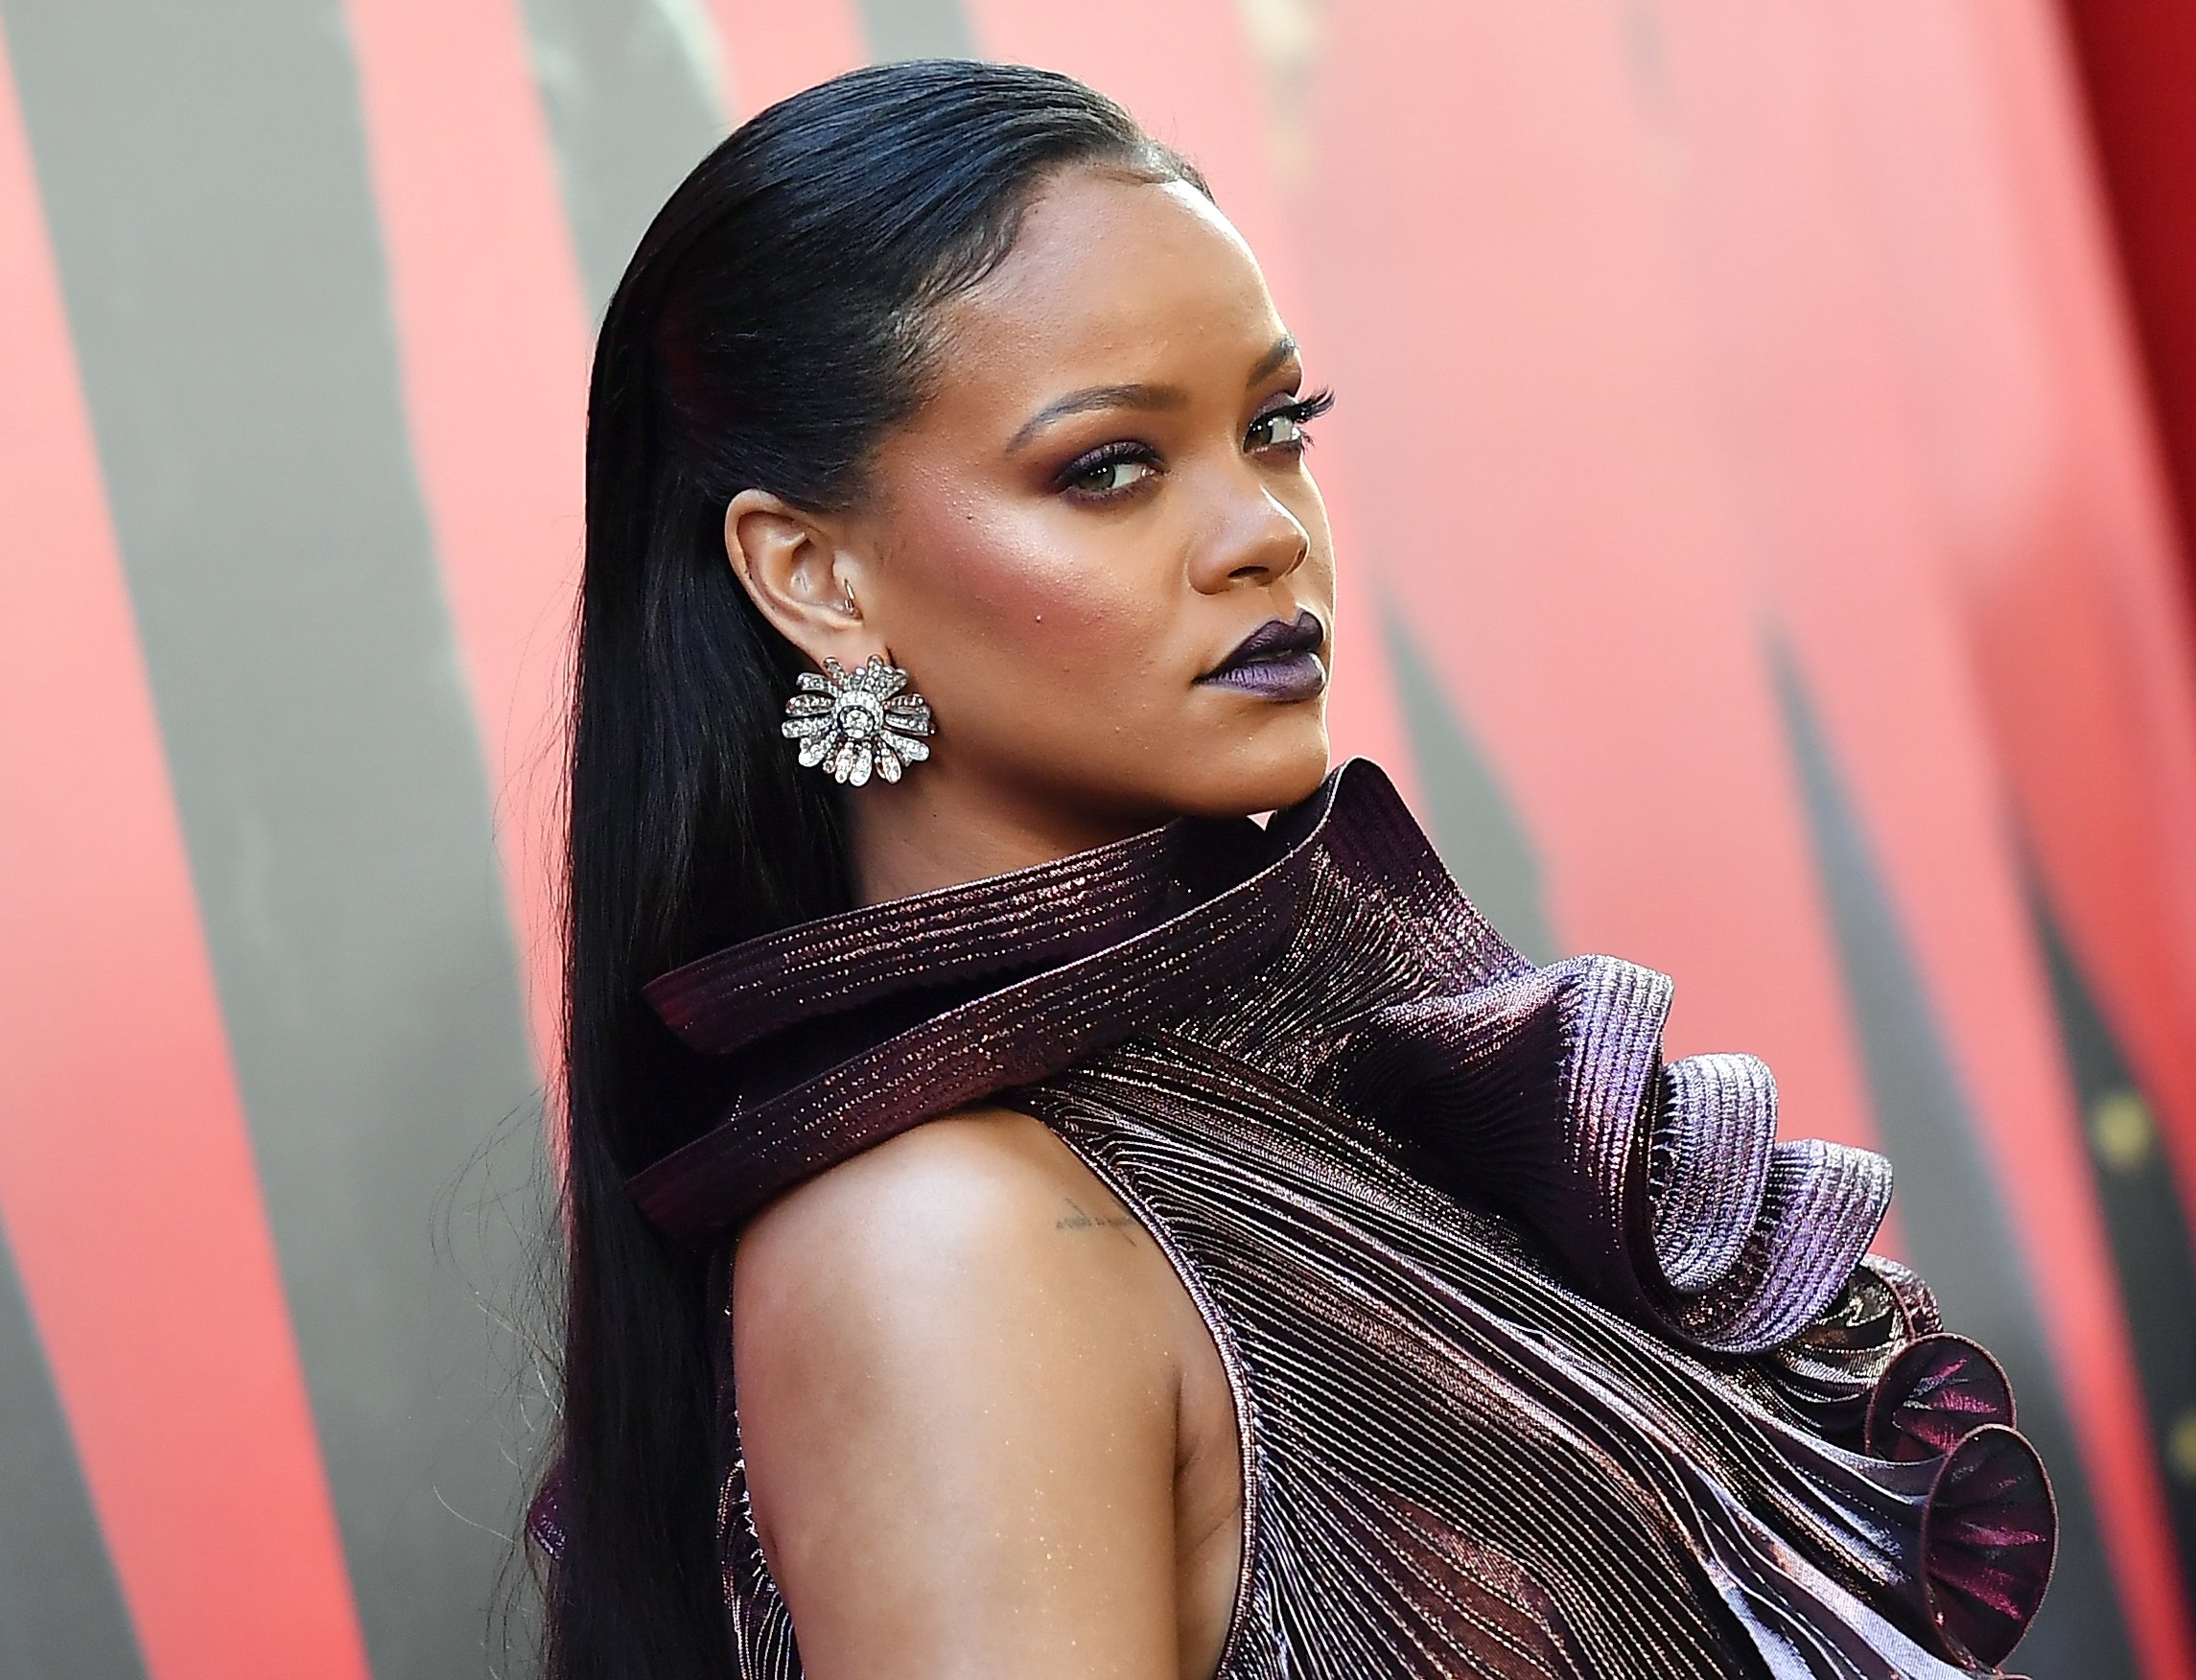 Rihanna wearing an earing